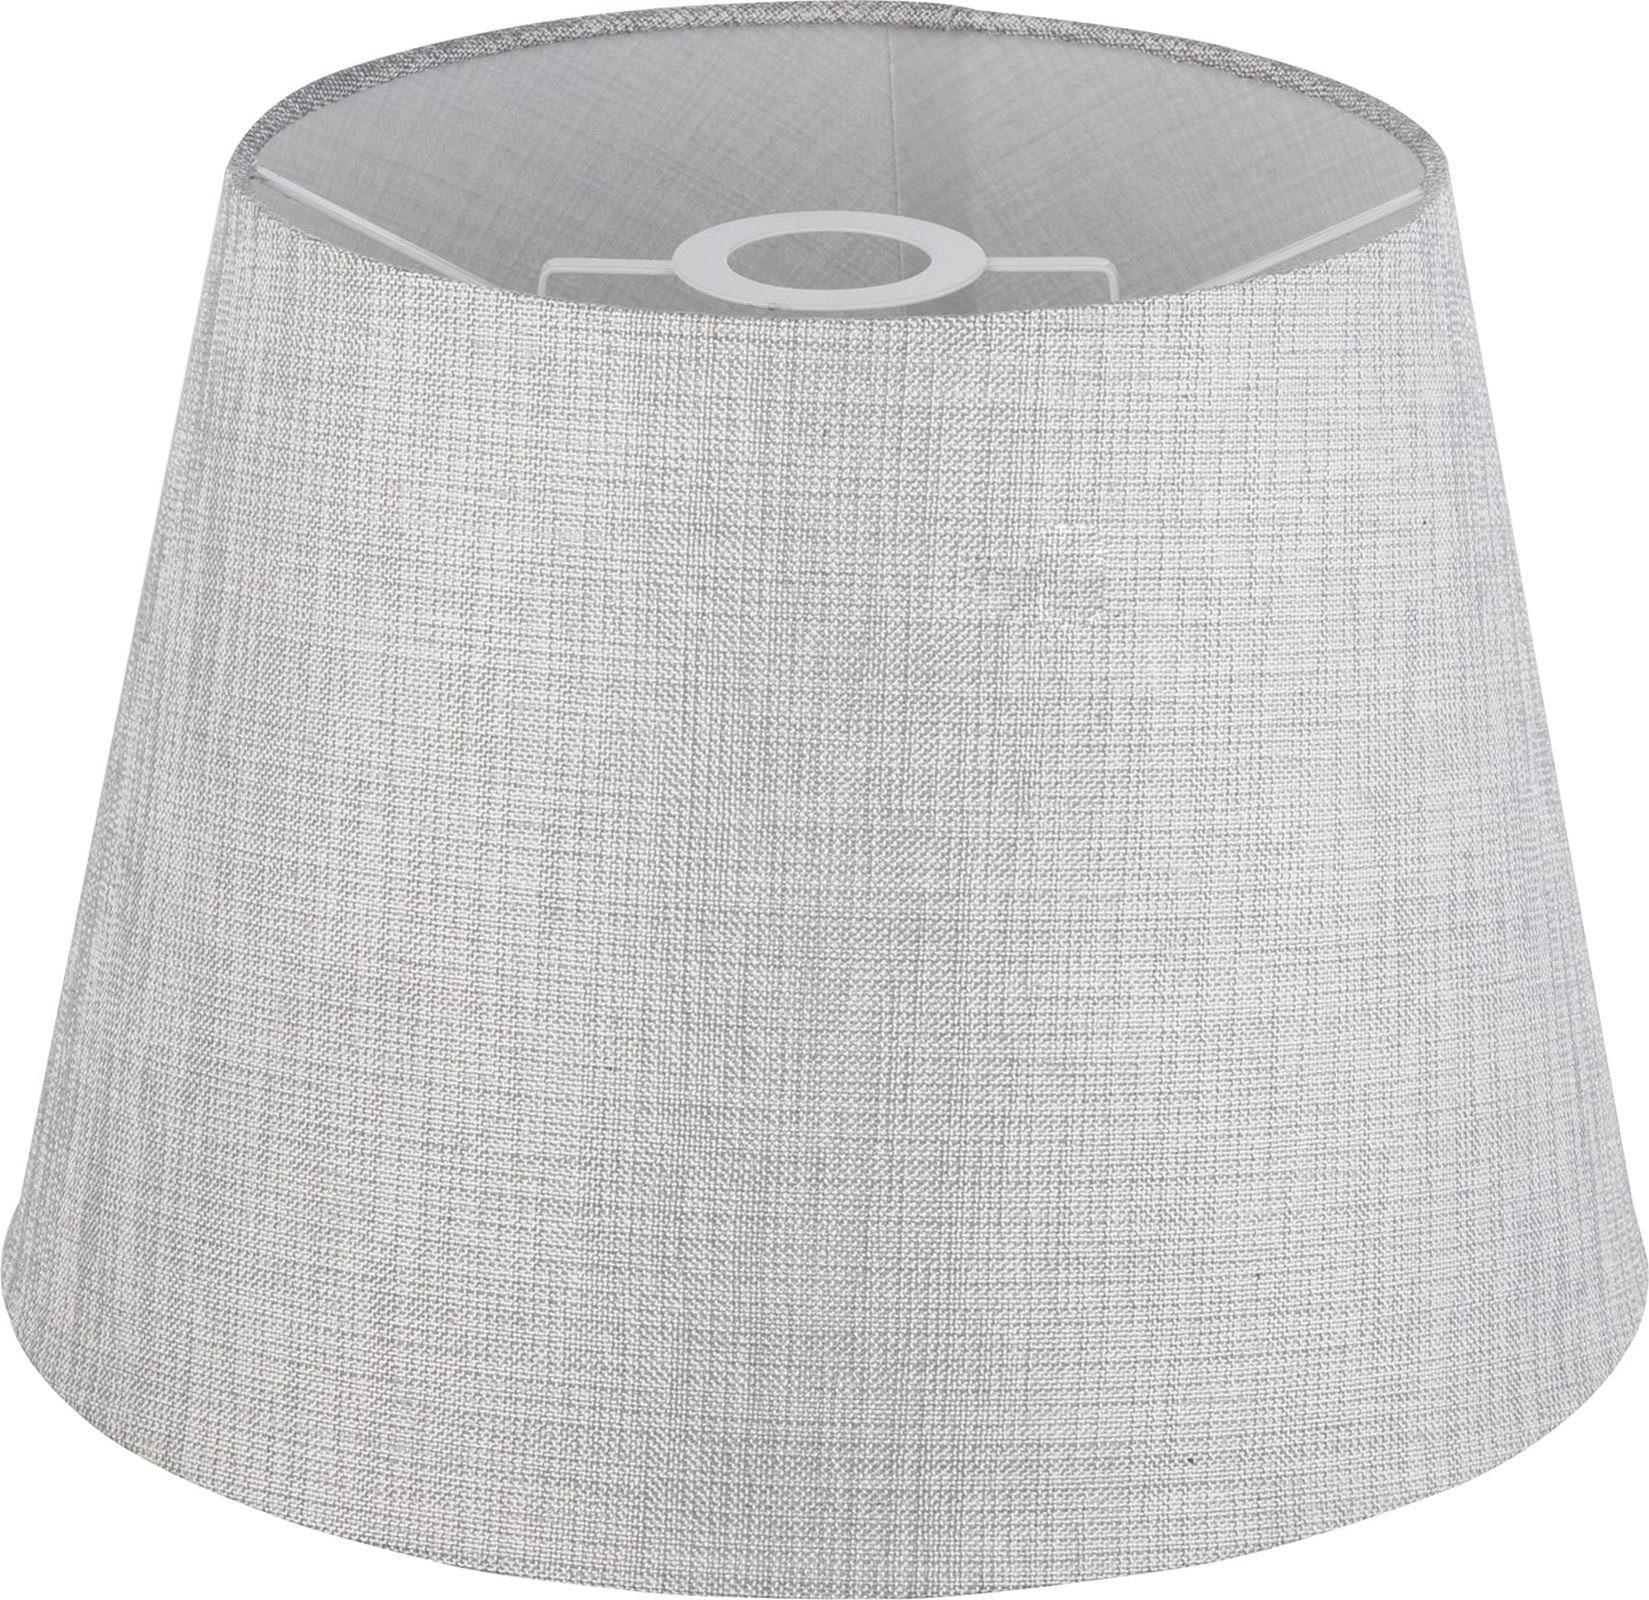 Grau Textilschirm Lampenschirm Tischlampen GLOBO für Globo 35 Tischleuchte Tischleuchten